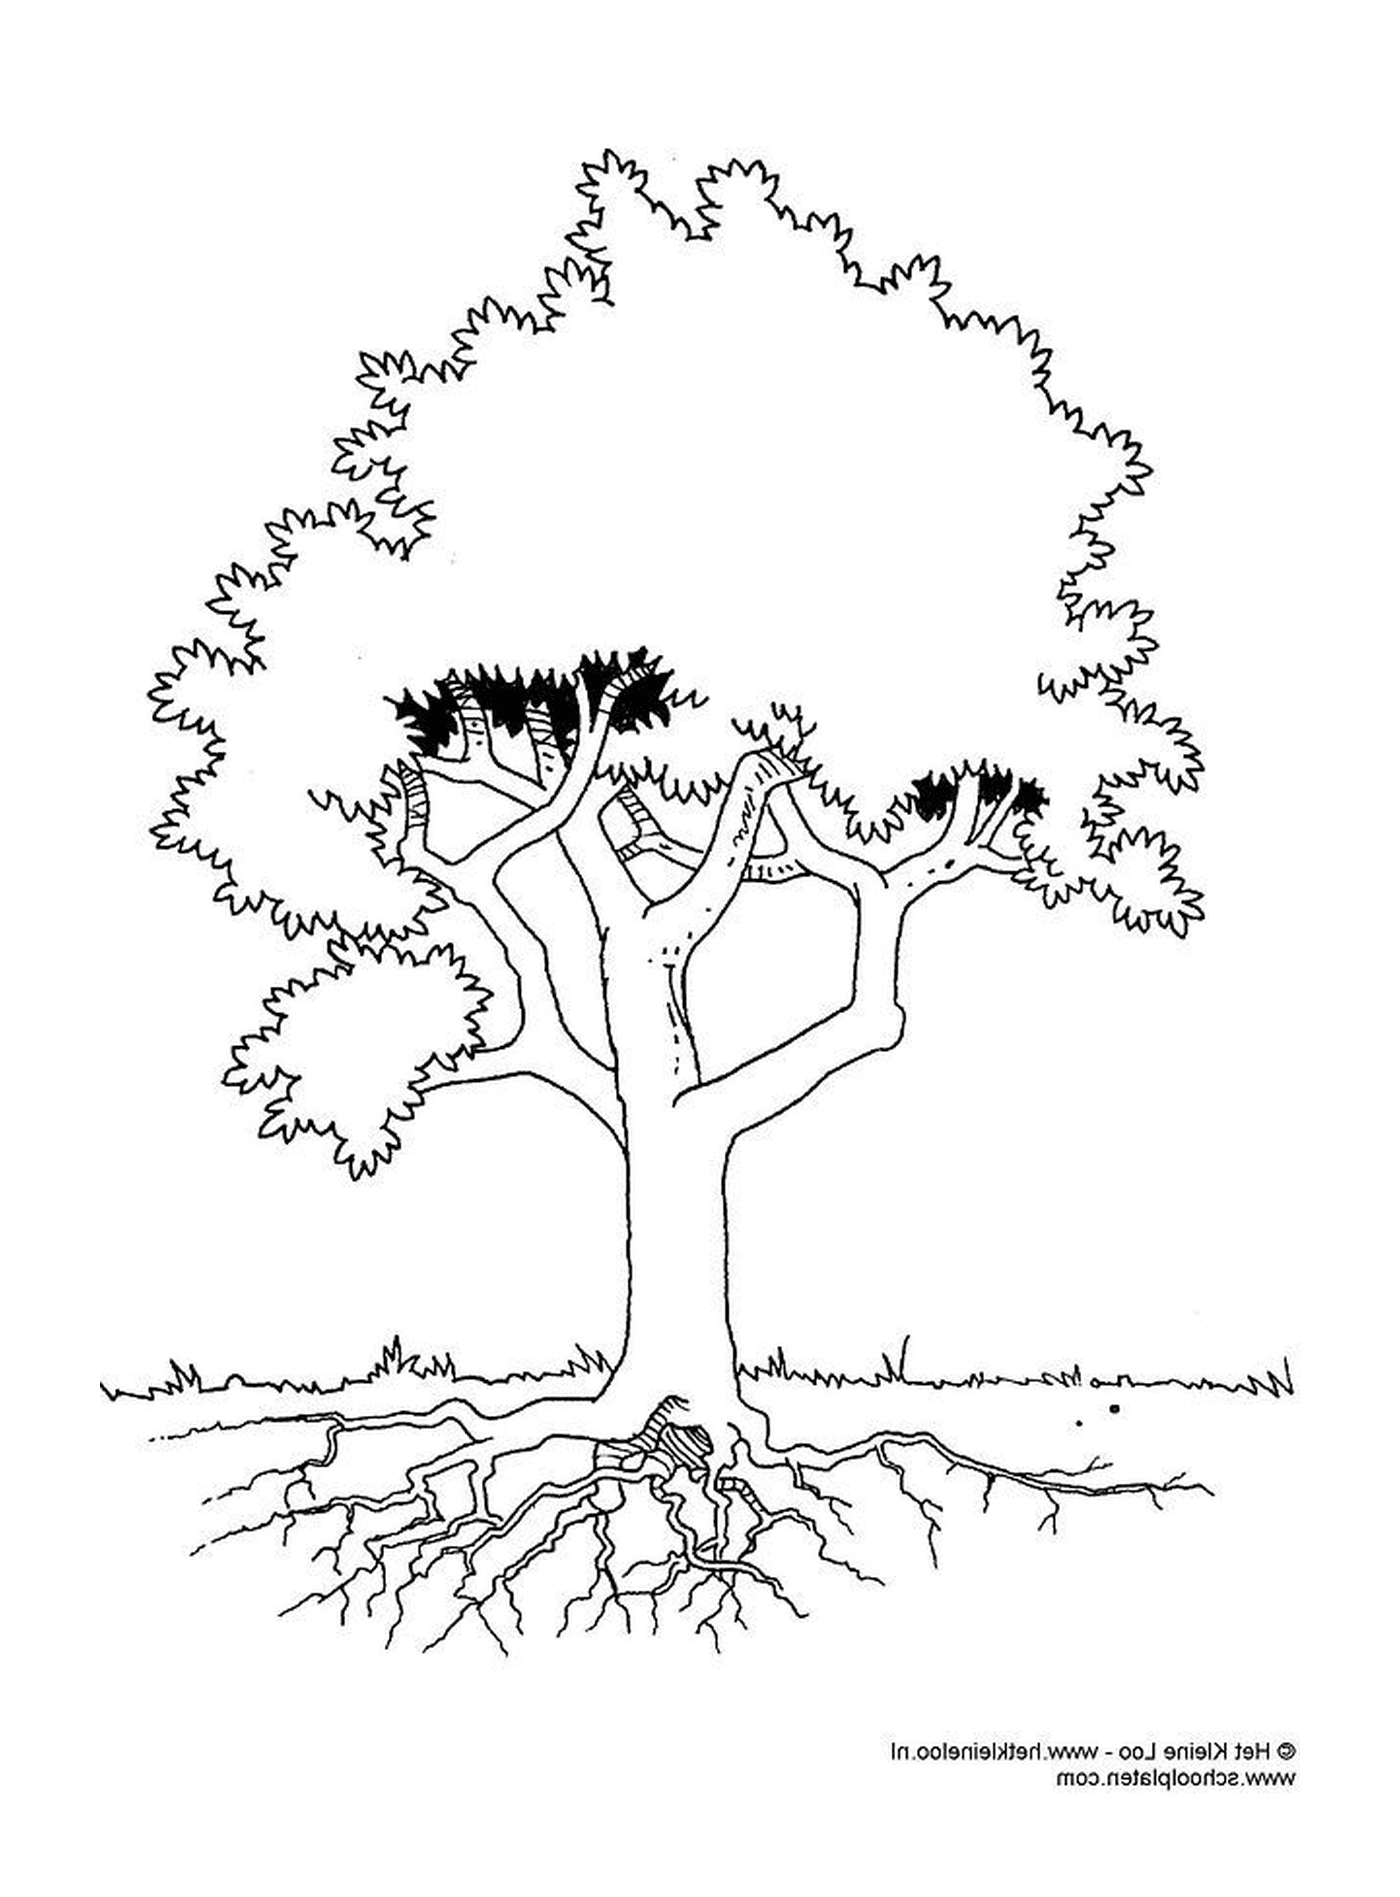  Ein Baum mit Wurzeln 